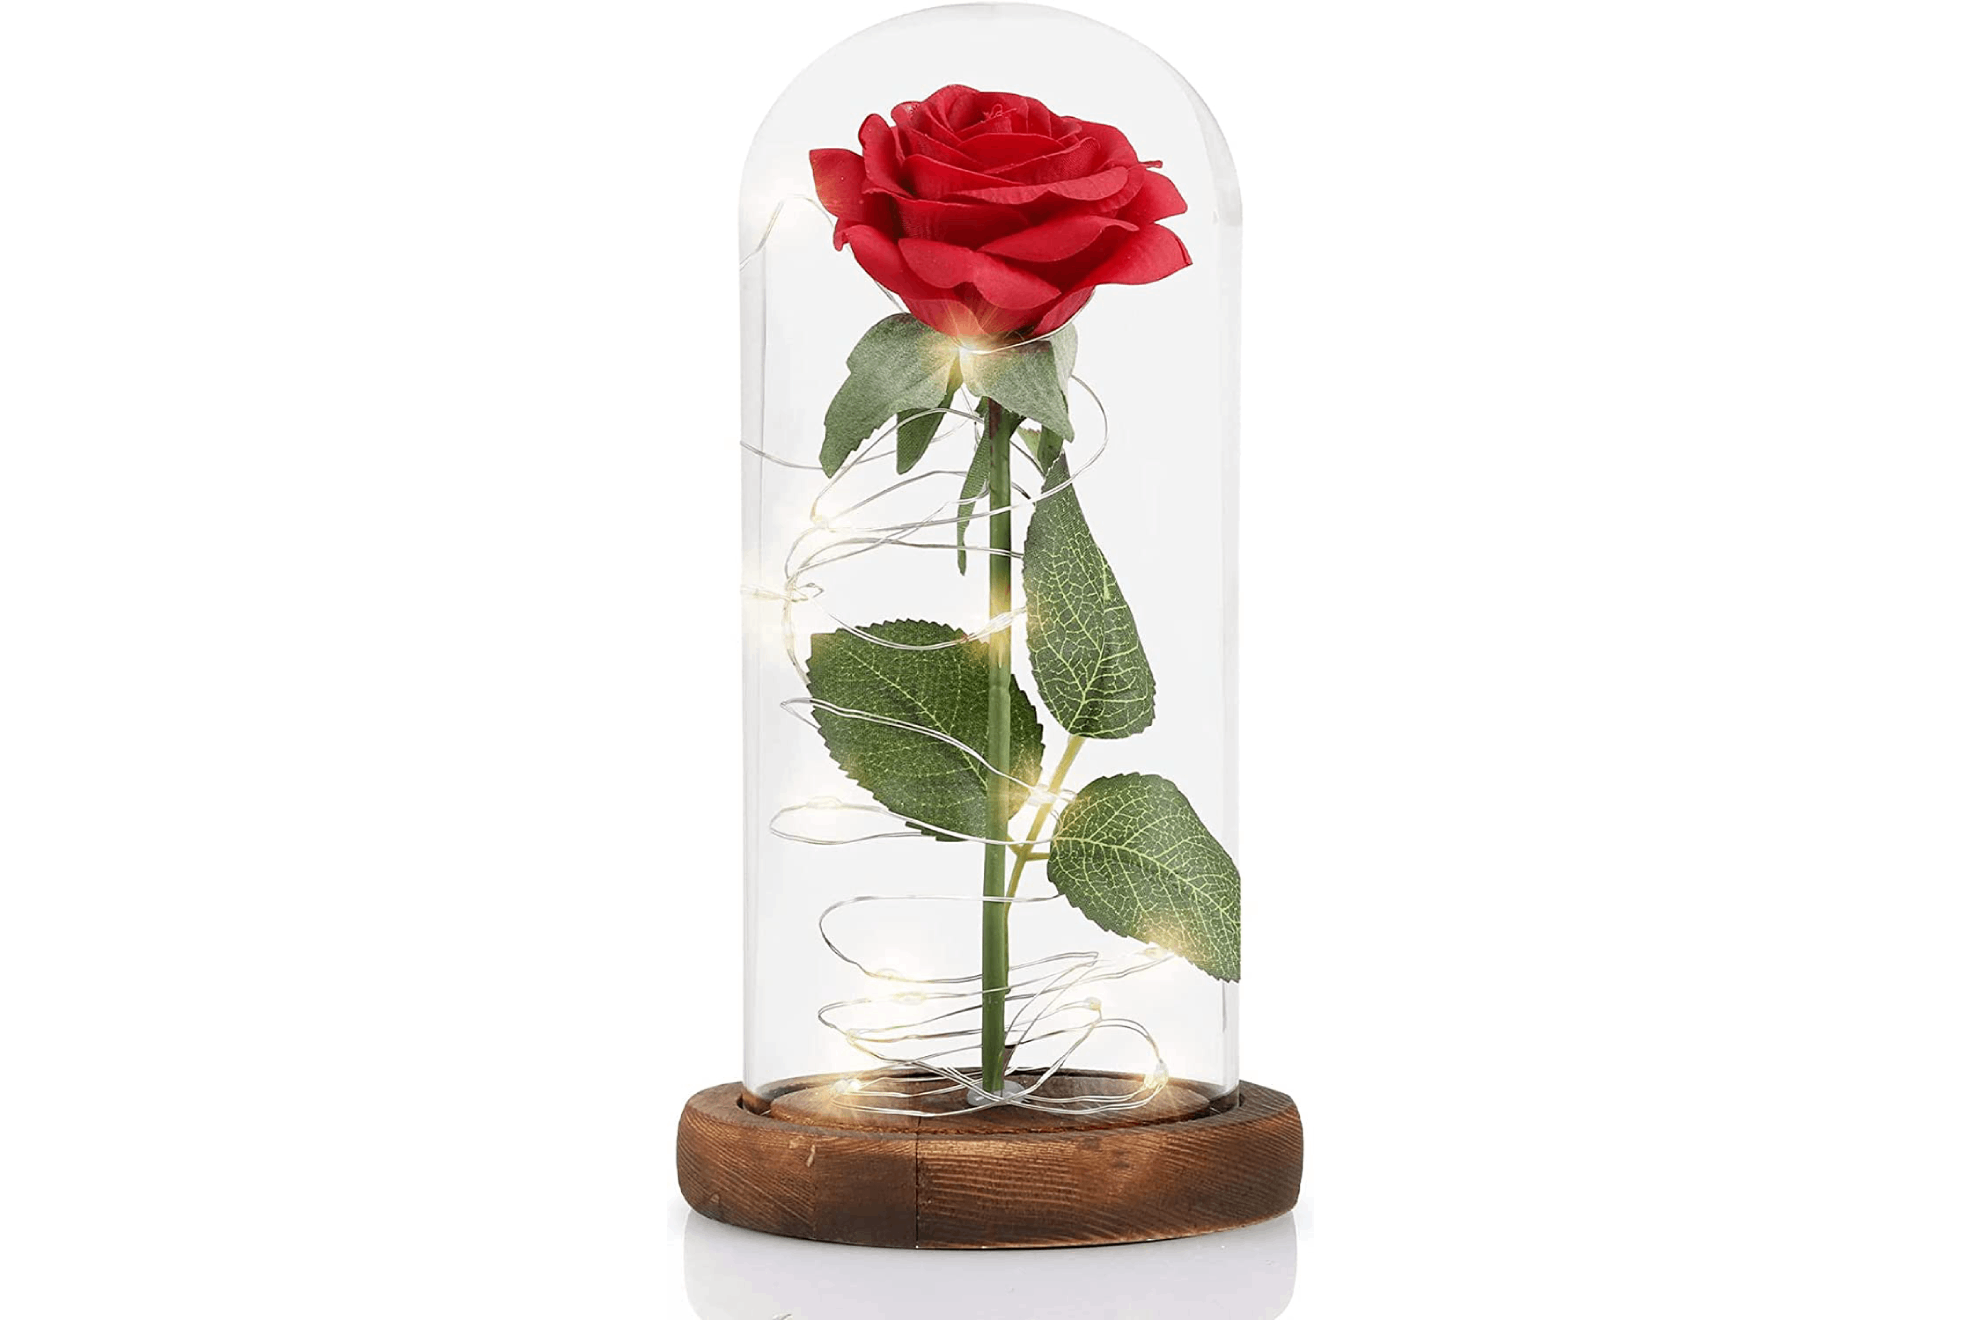 Forever Flowers - Rosas eternas reales, hechas a mano, flores frescas con  luces LED de estado de ánimo, regalo para el día de San Valentín, día de la